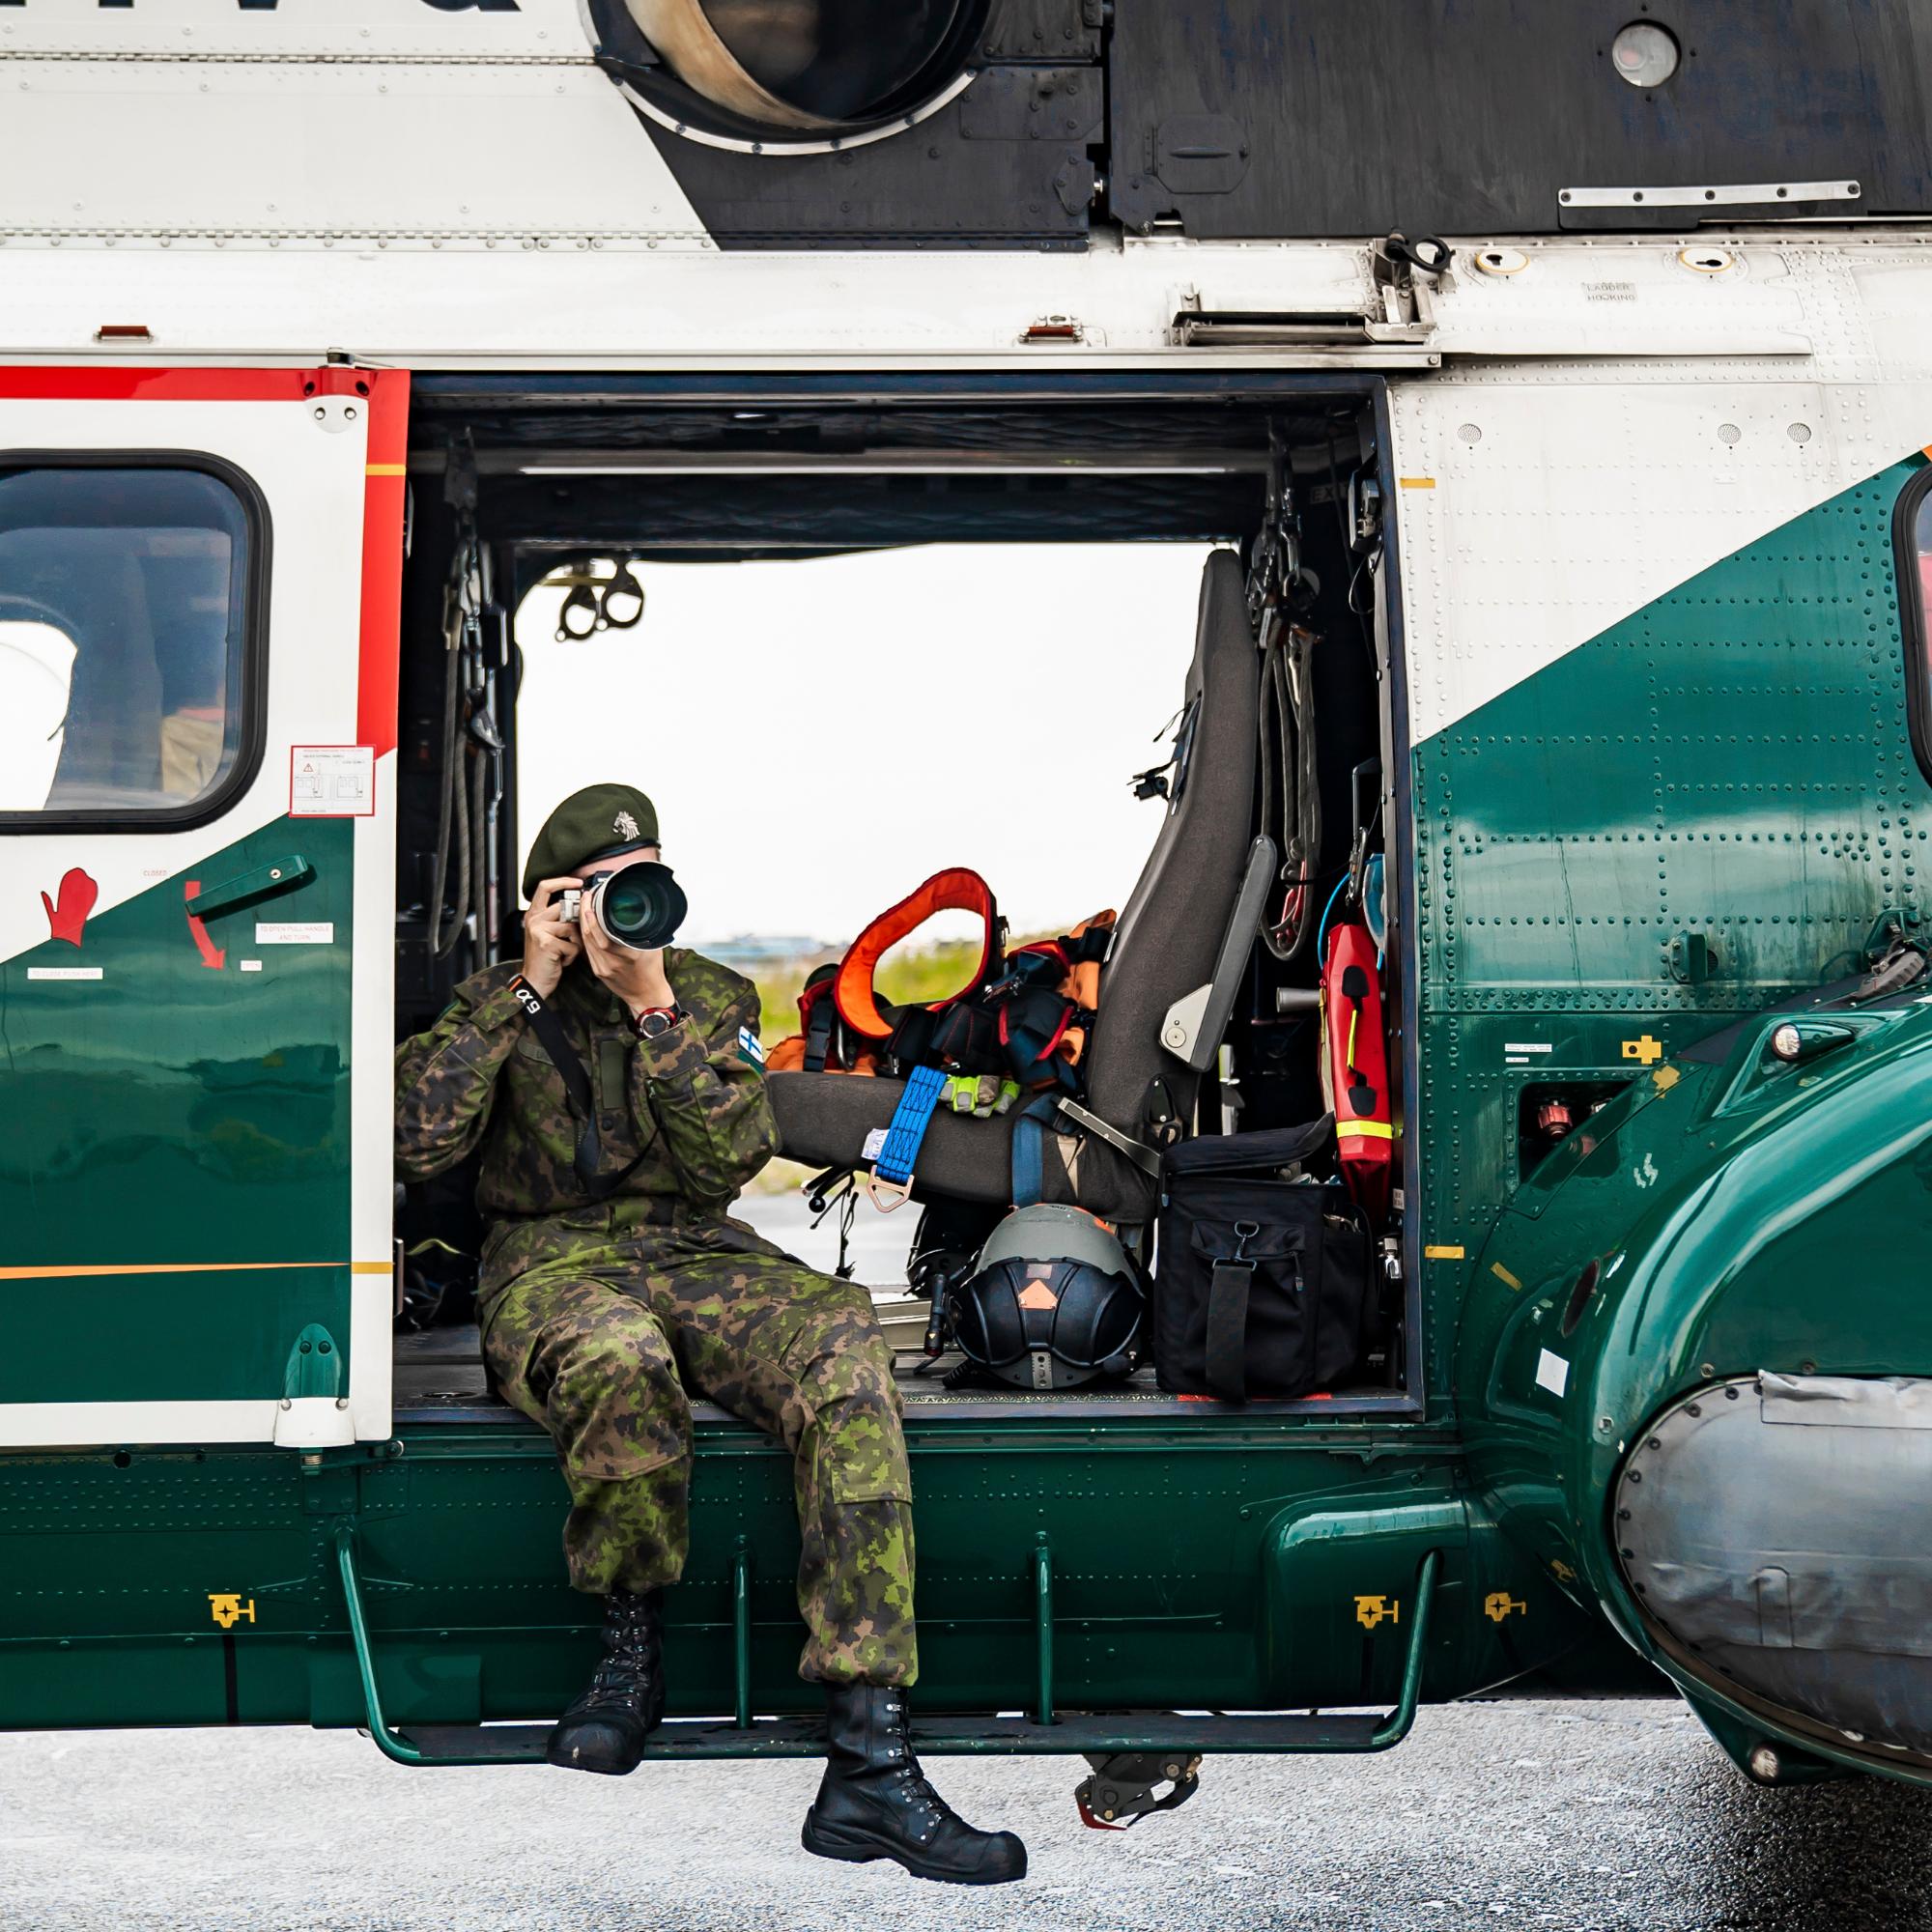 Varusmies istuu helikopterin oviaukolla ja ottaa valokuvaa.